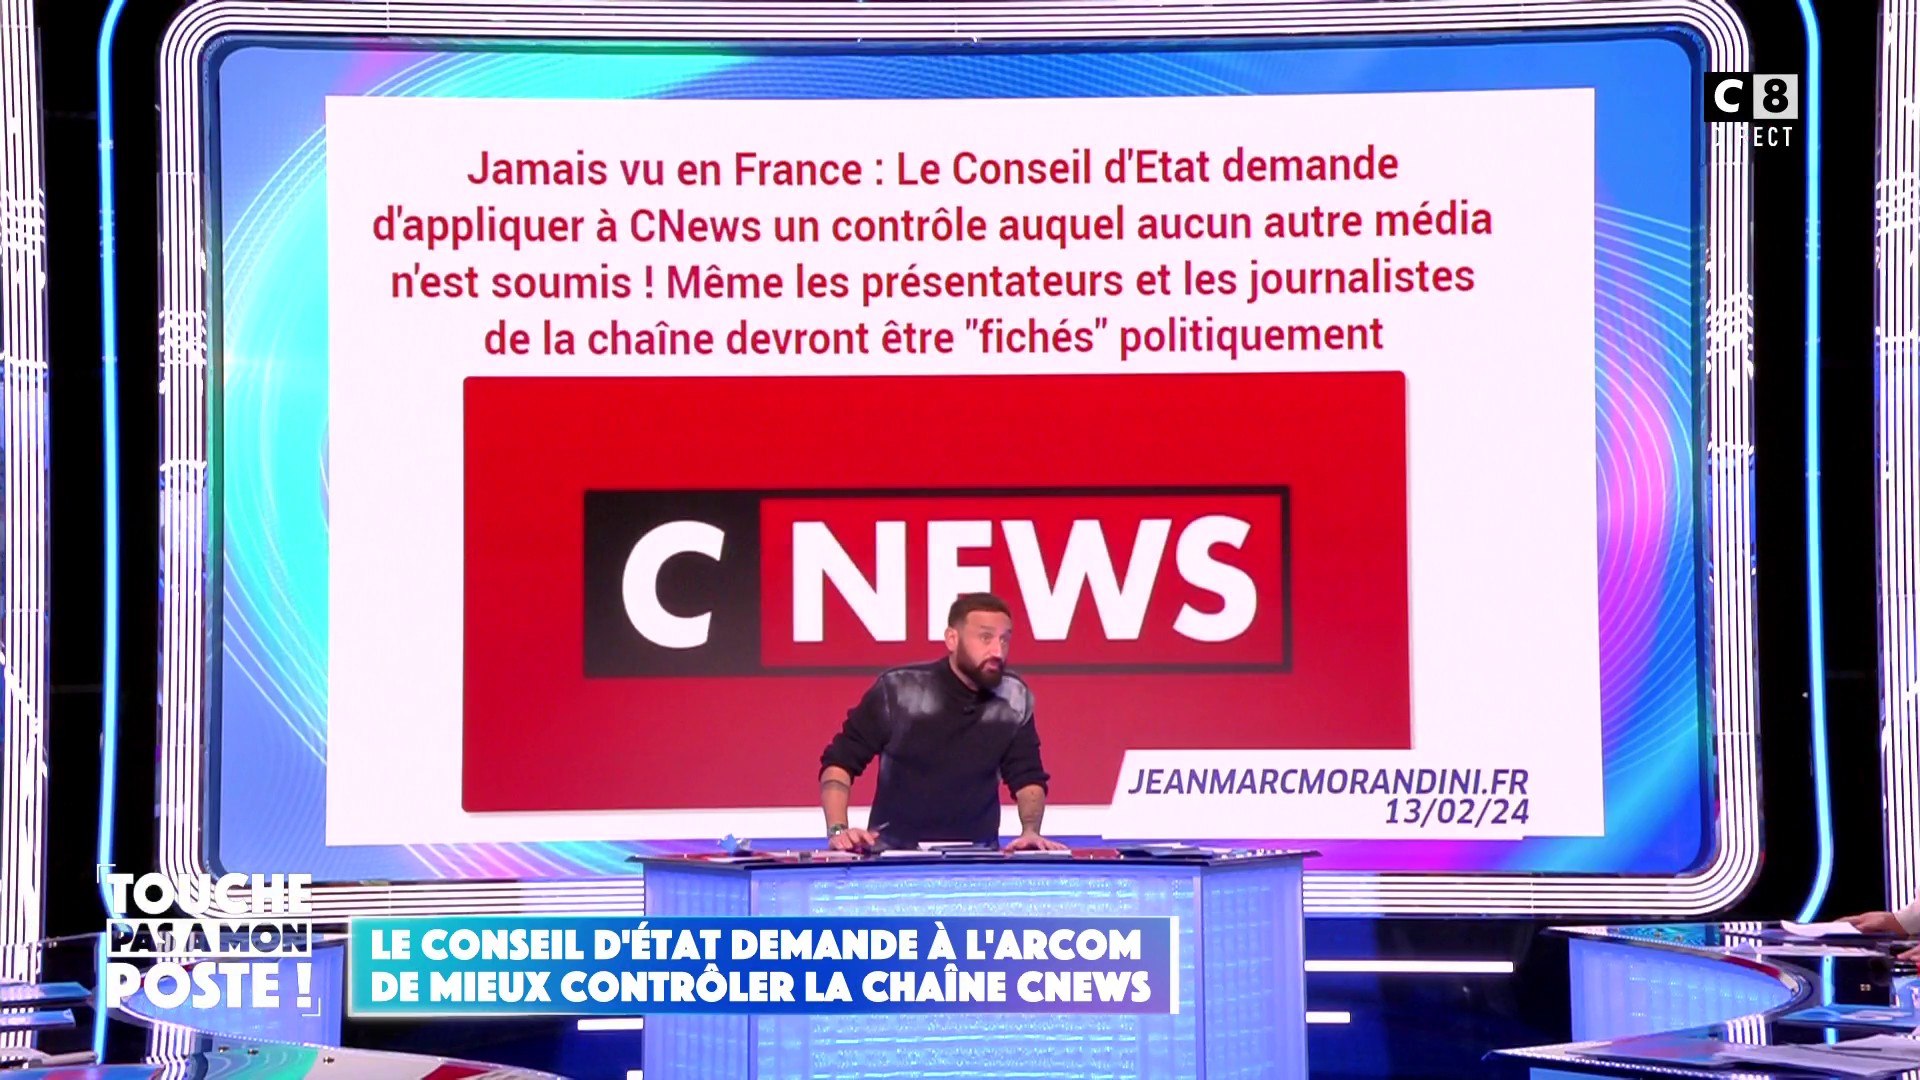 Le Conseil d'Etat demande à l'ARCOM de mieux contrôler la chaine CNews :  Cyril Hanouna réagit - Vidéo Dailymotion